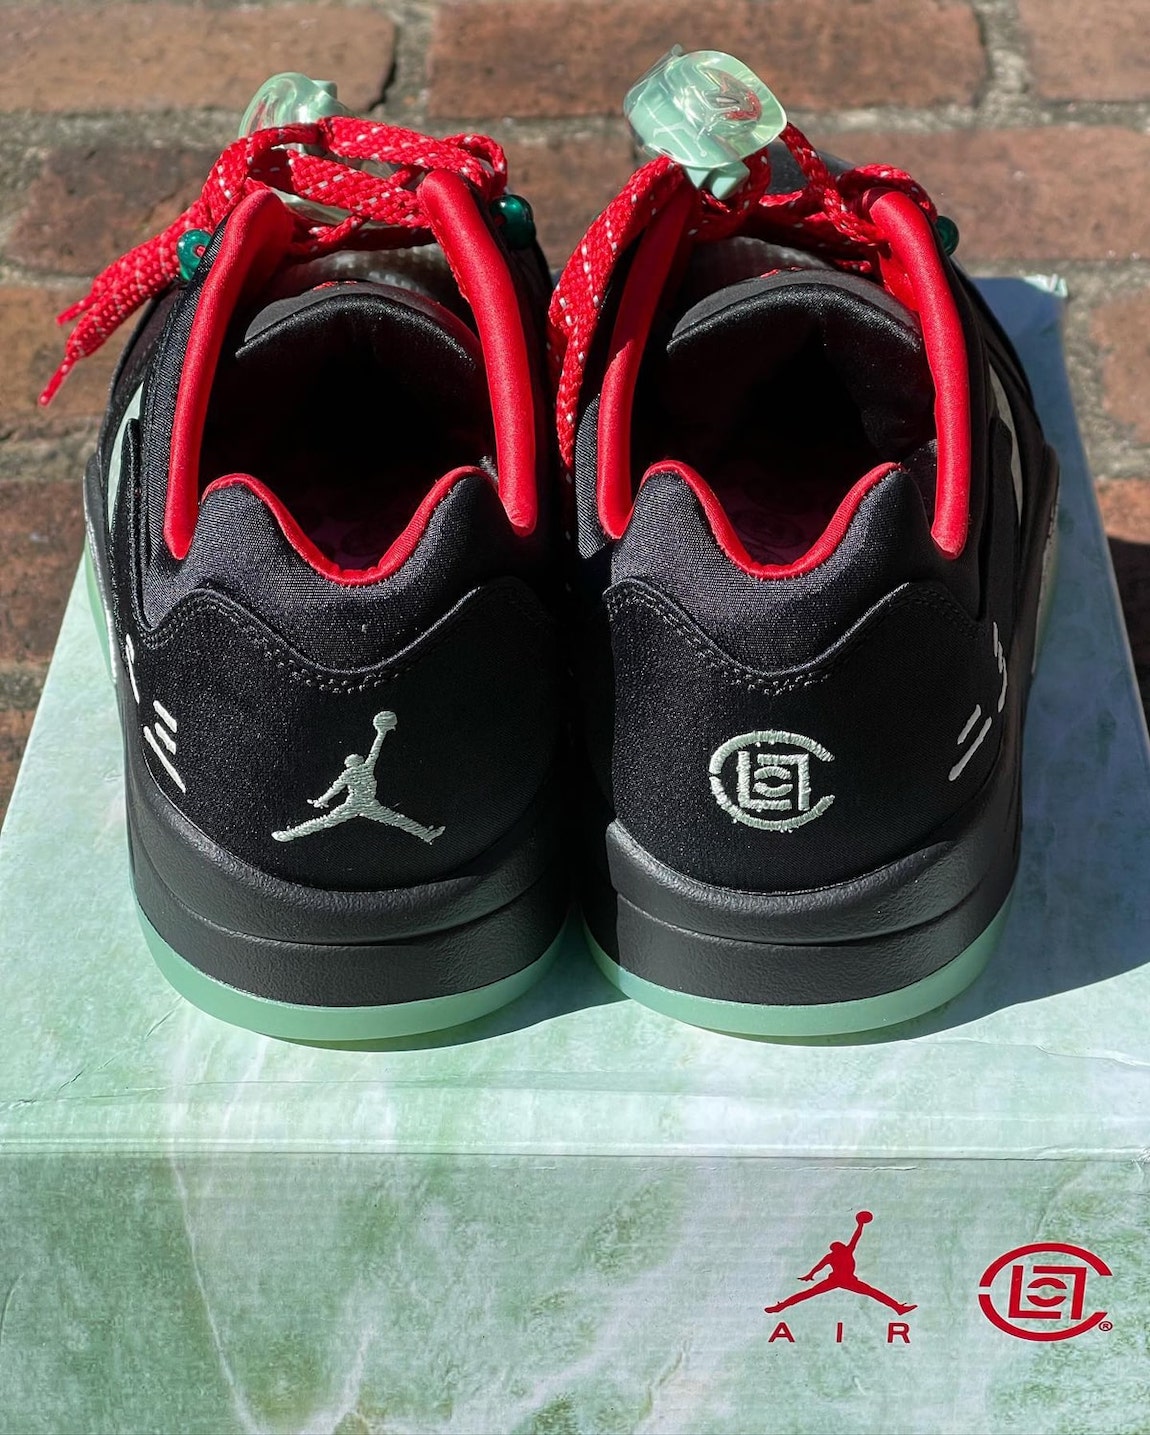 Clot Air Jordan 5 Low Release Date Price